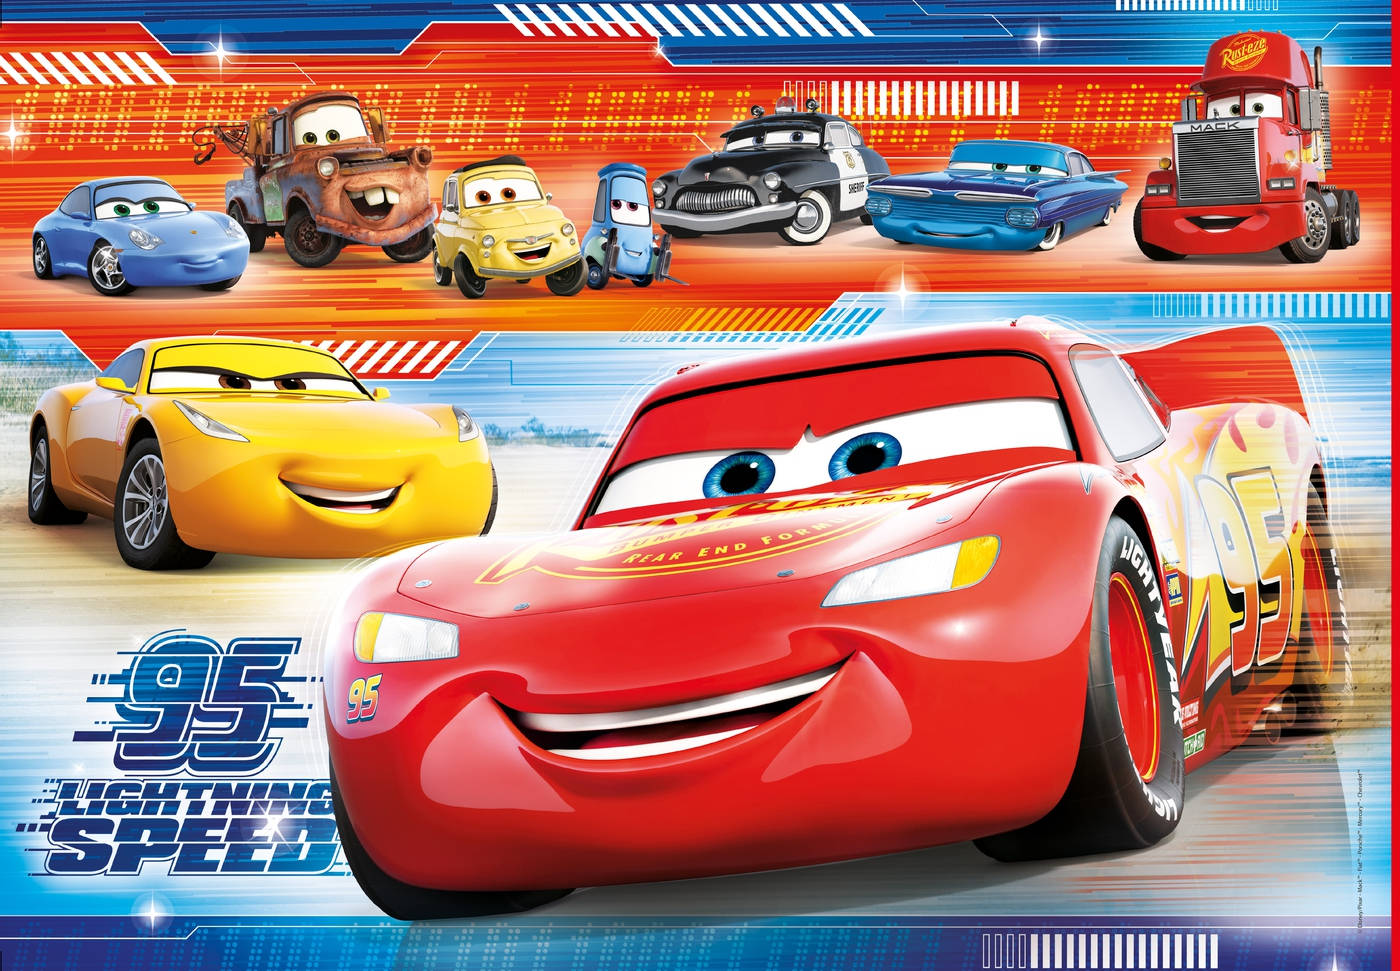 Disney Pixar Cars 3 Characters Wallpaper